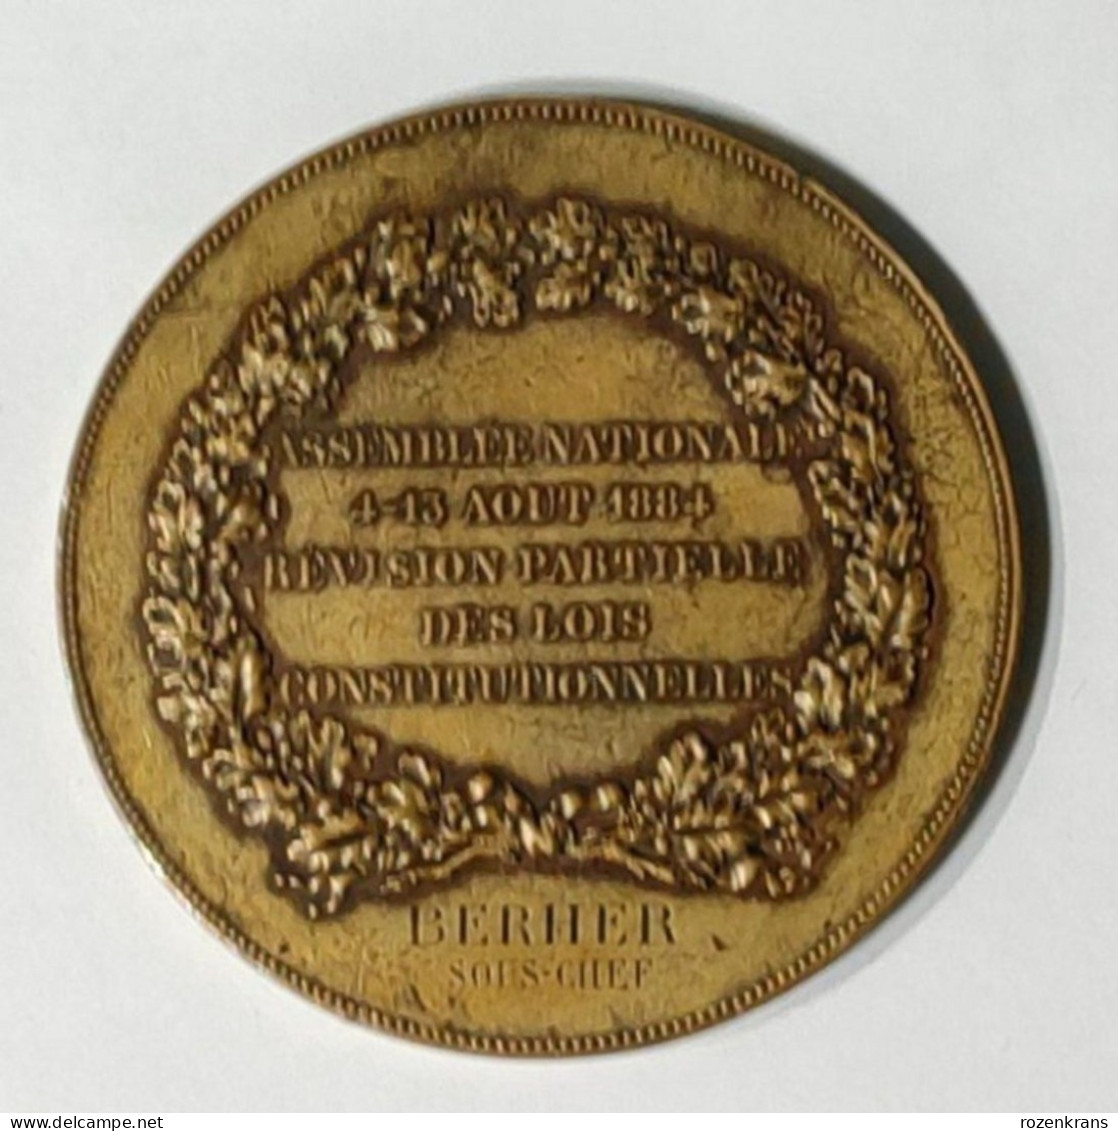 Medaille Ancienne Assemblee Nationale Gravee Chaplain 1884 Revision Des Lois Behrer Sous-Chef Munt Old Medal Oude - Royaux / De Noblesse